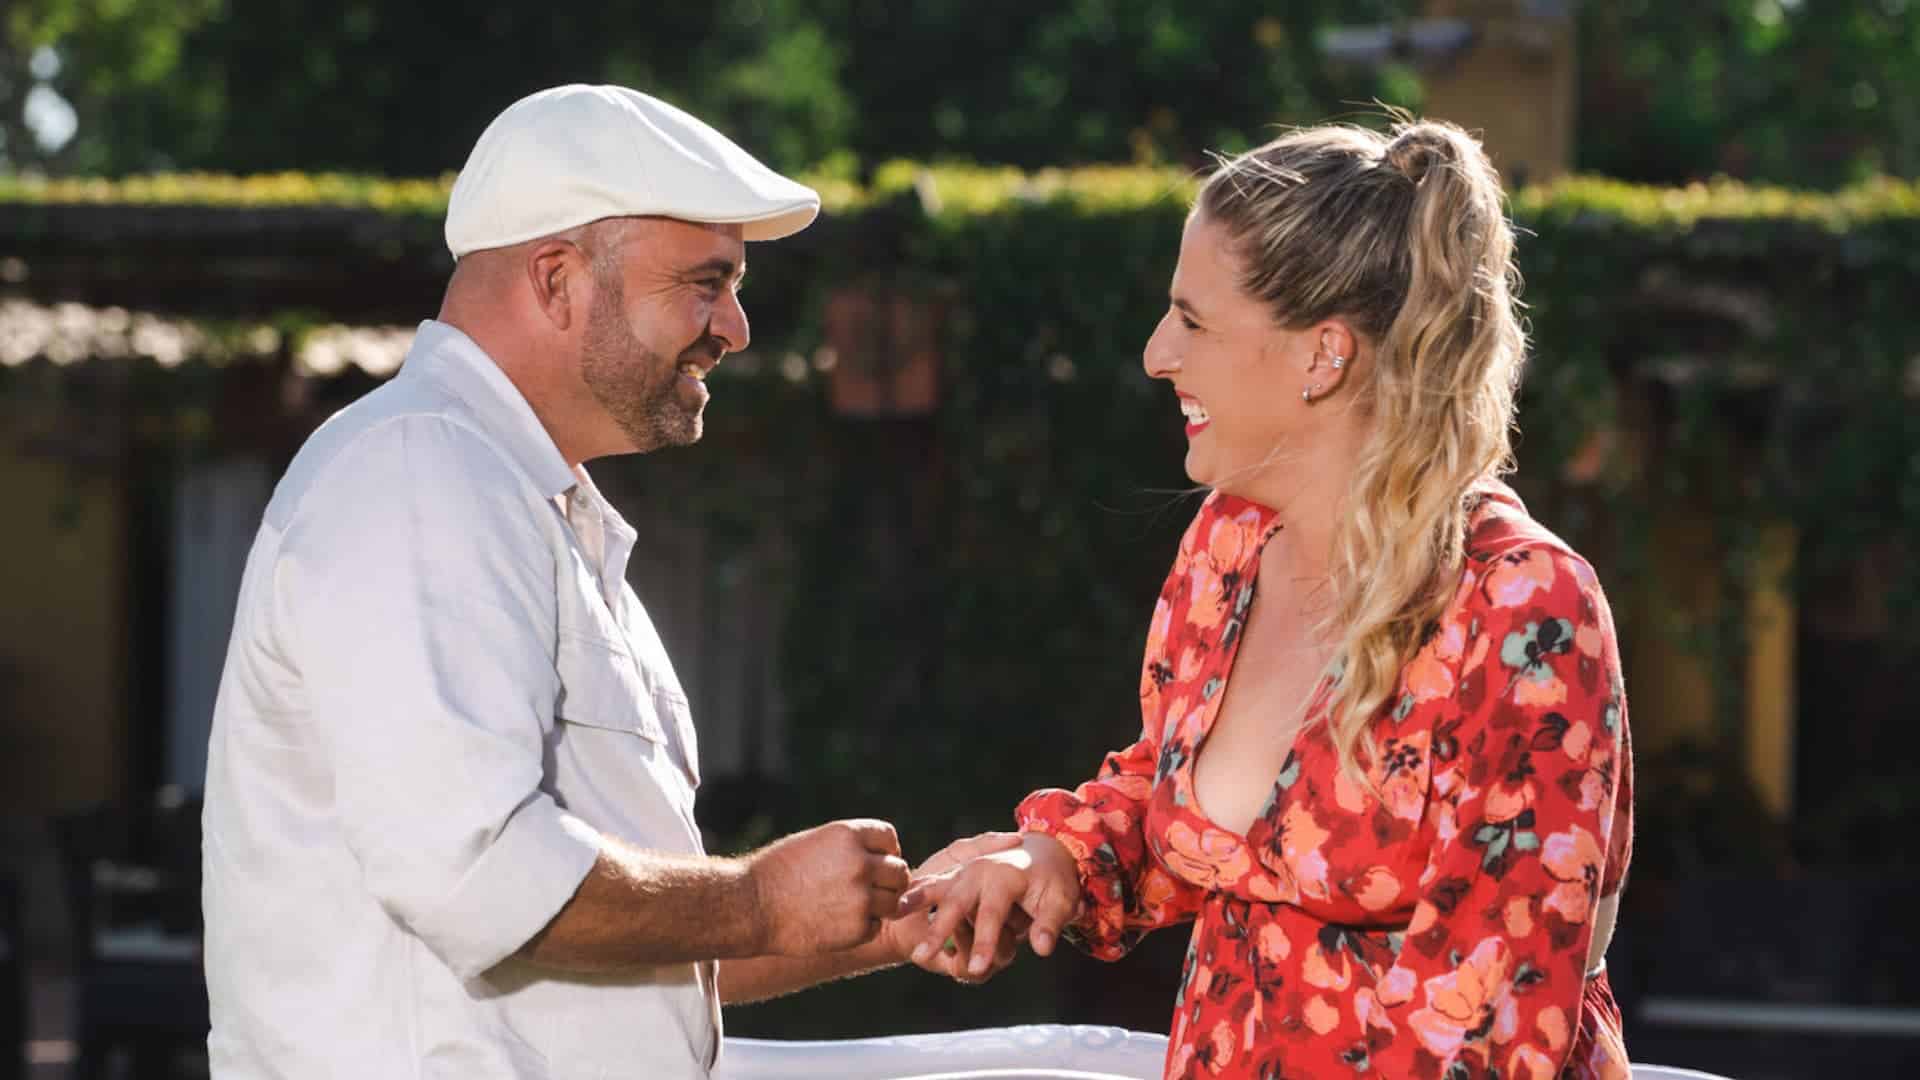 Quem Quer Namorar Com O Agricultor, André Mateus, Ana Pereira